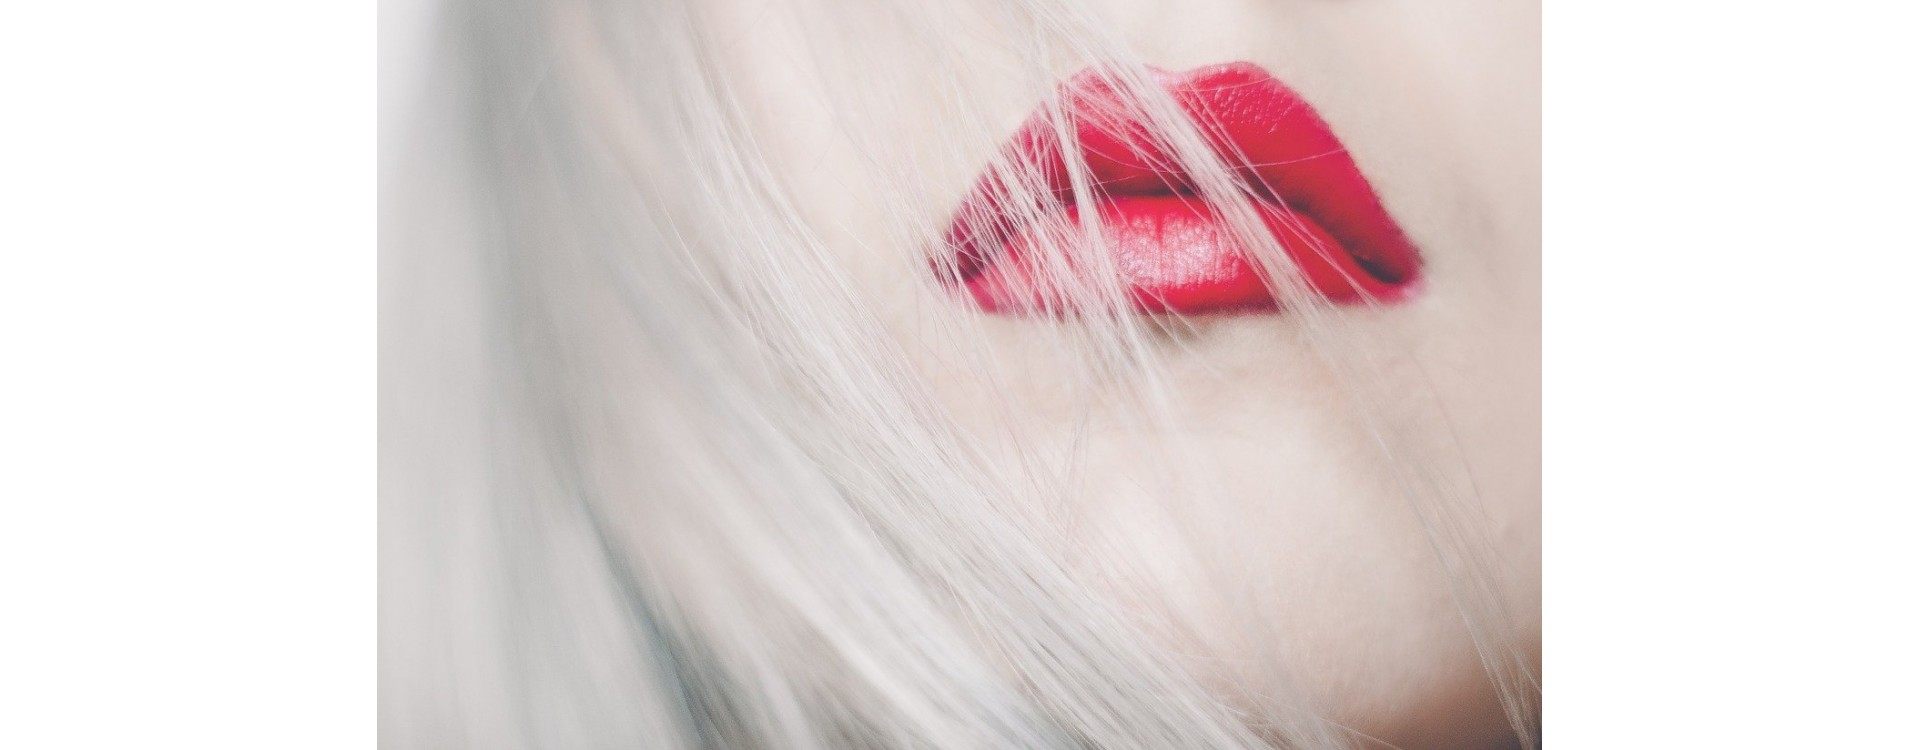 Différence entre les rouges à lèvres classiques et les encres à lèvres : comment choisir ?